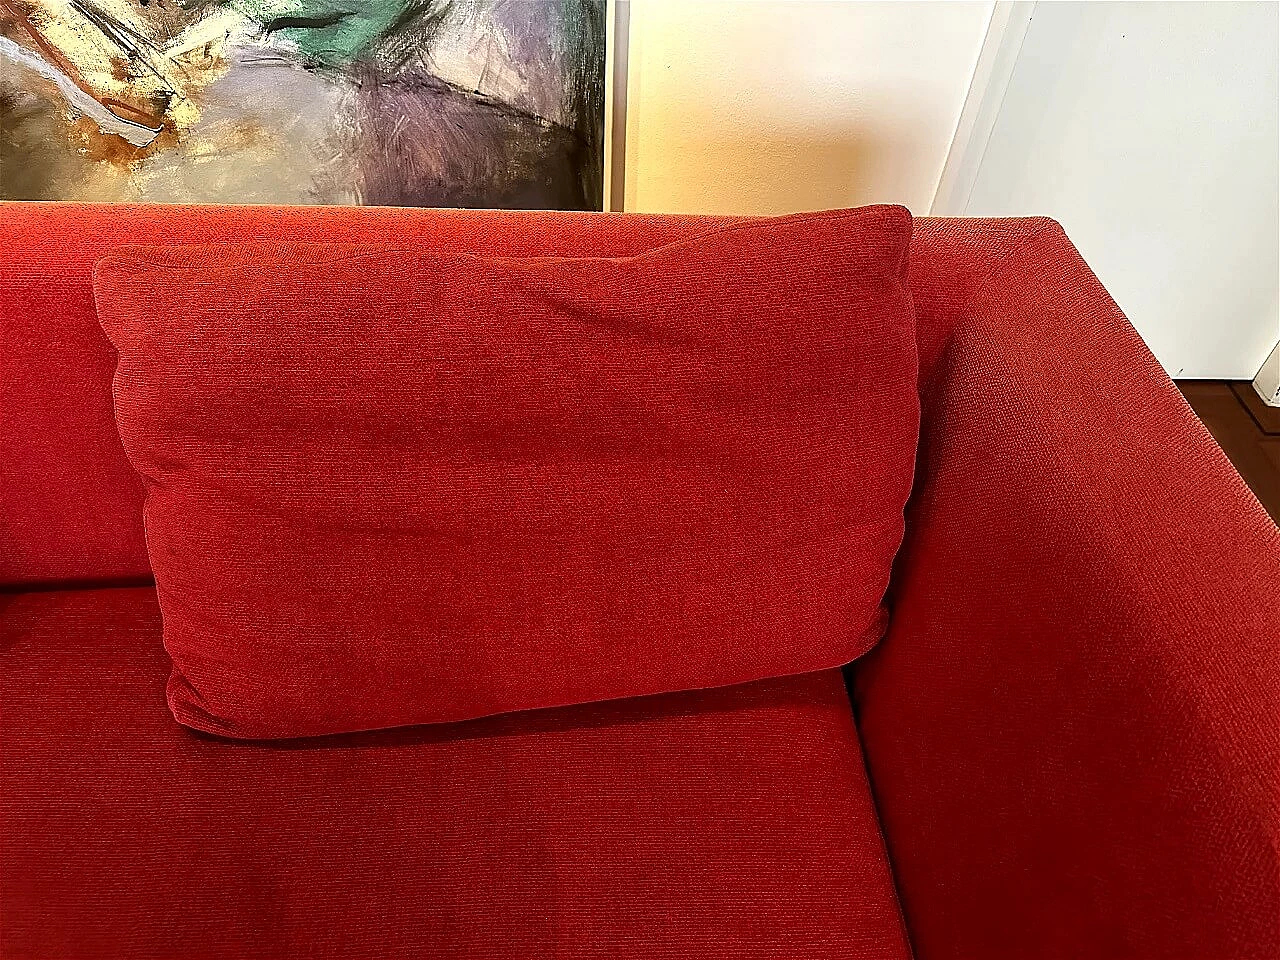 CH228 Charles sofa in red Maxalto-Cat cotton by Antonio Citterio for B&B Italia 23